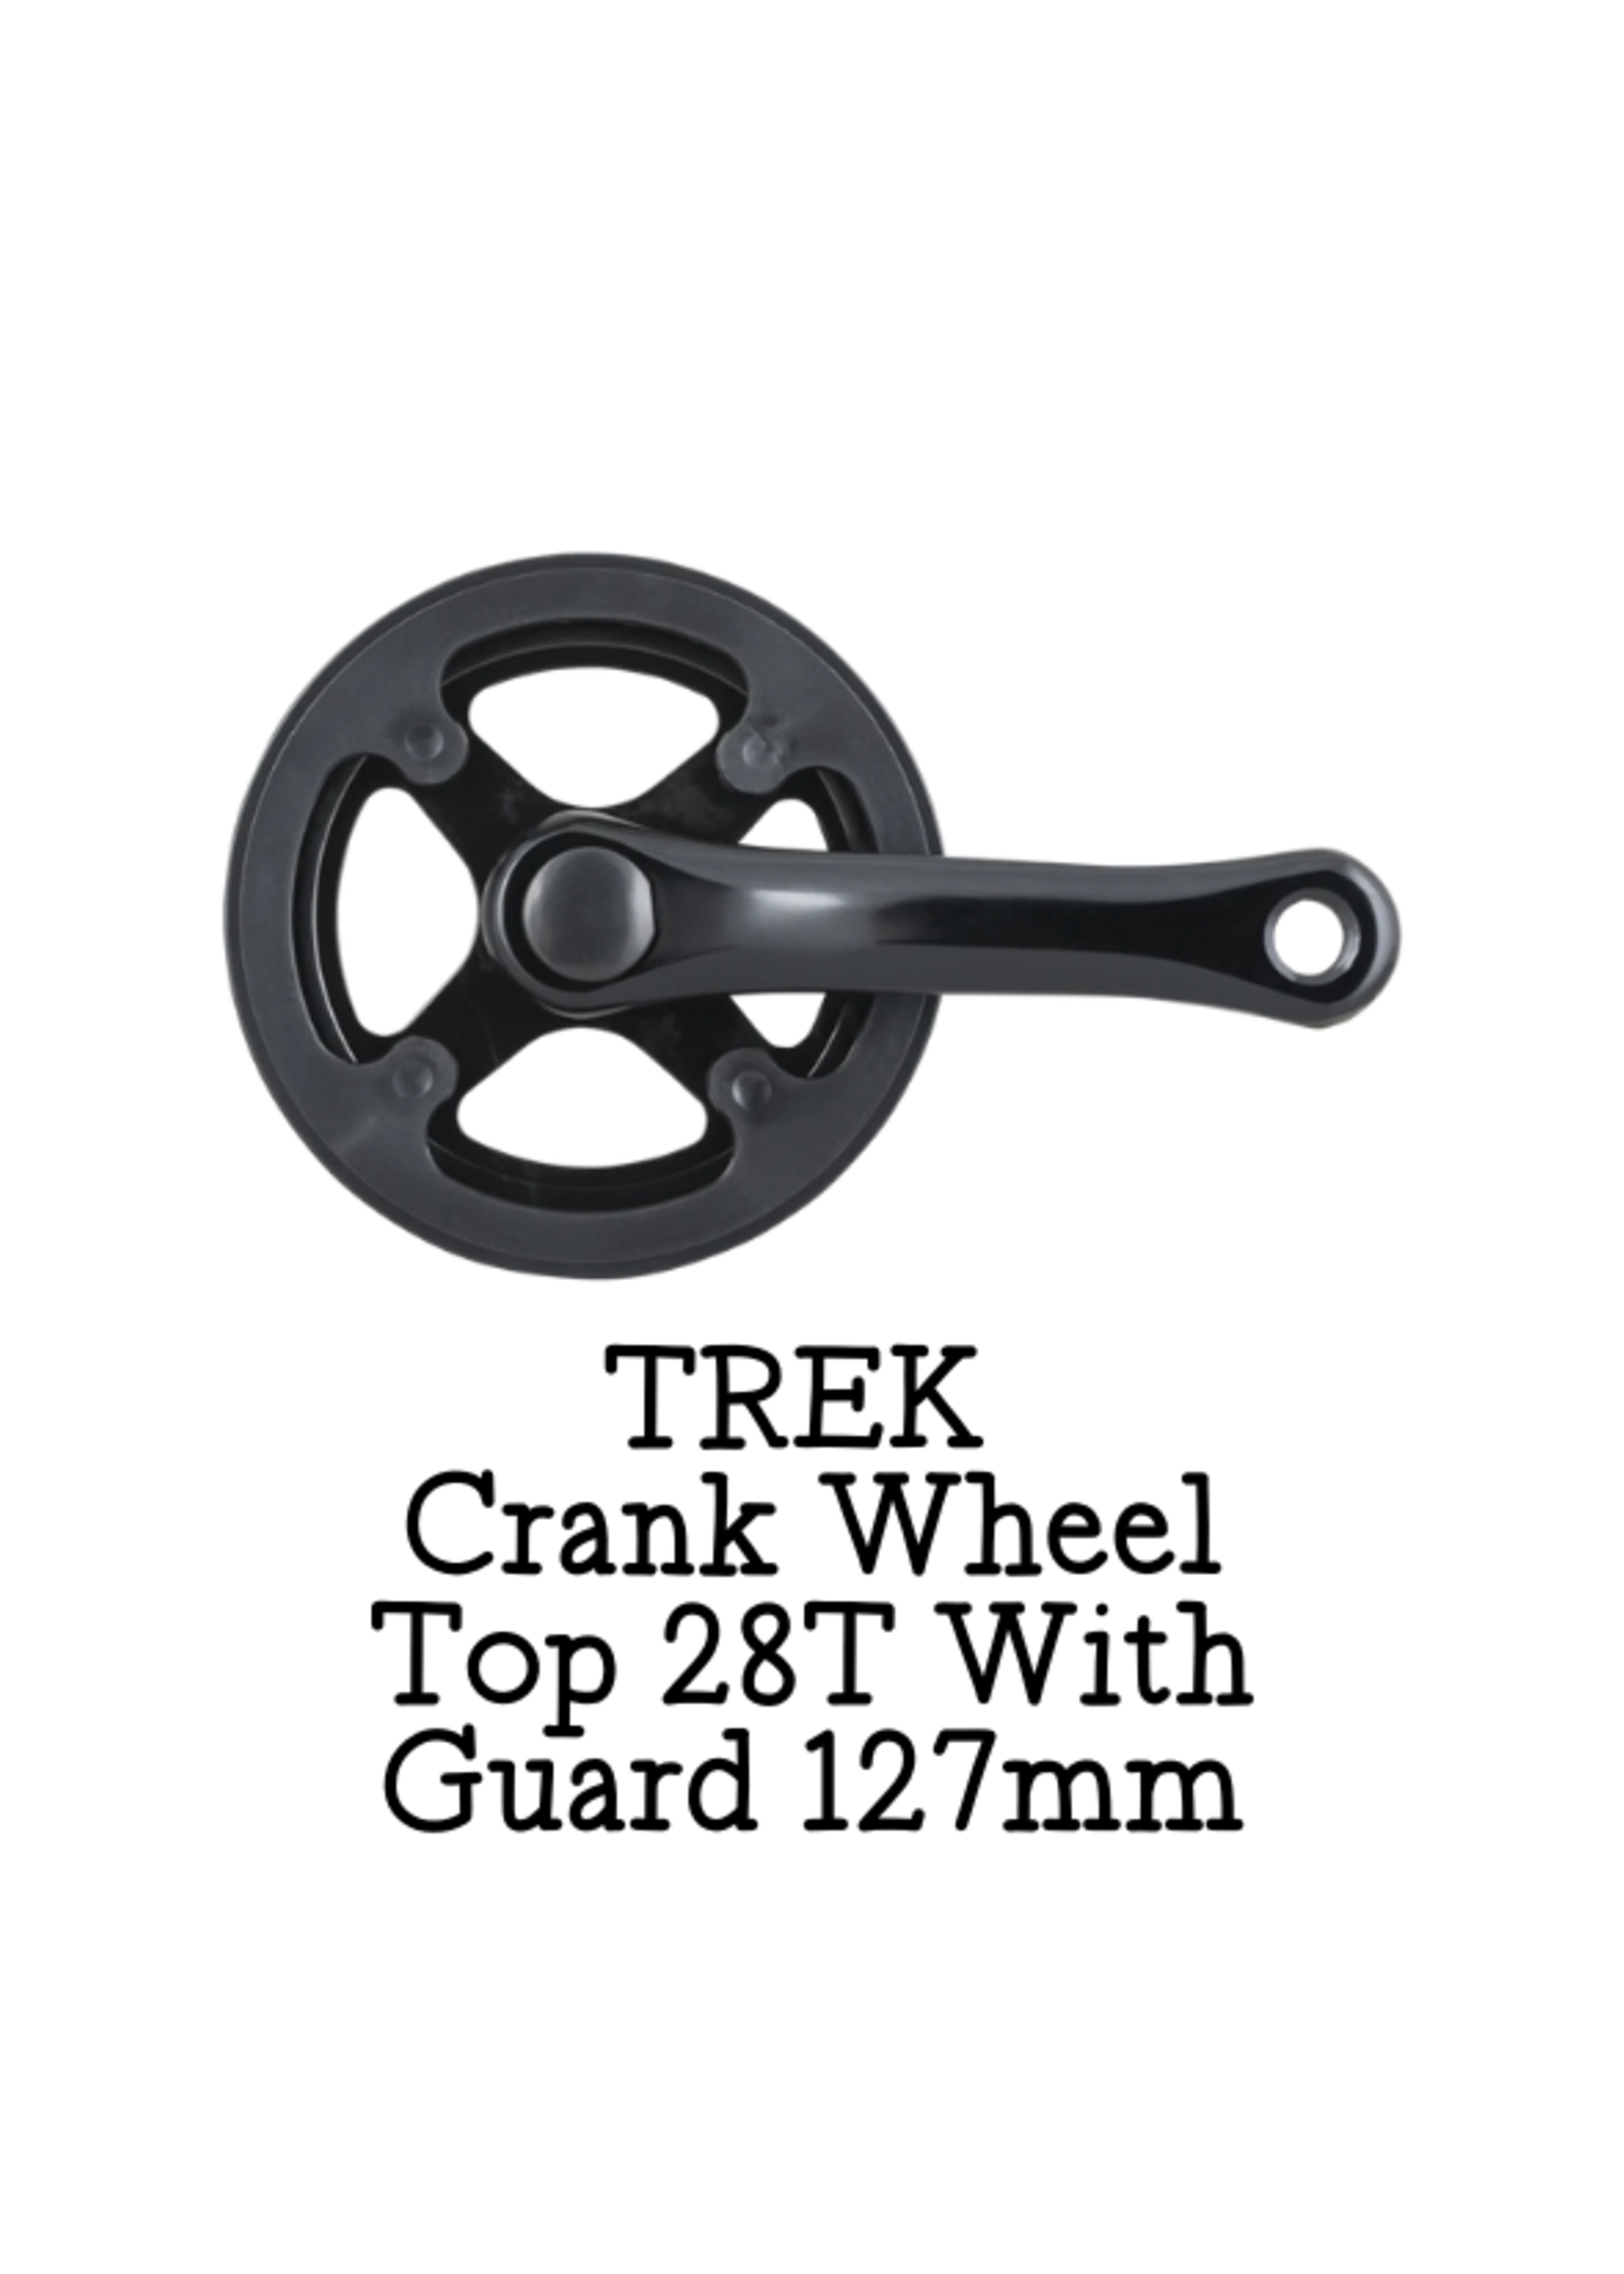 TREK Crank Trek Wheel Top 28T With Guard 127Mm Black